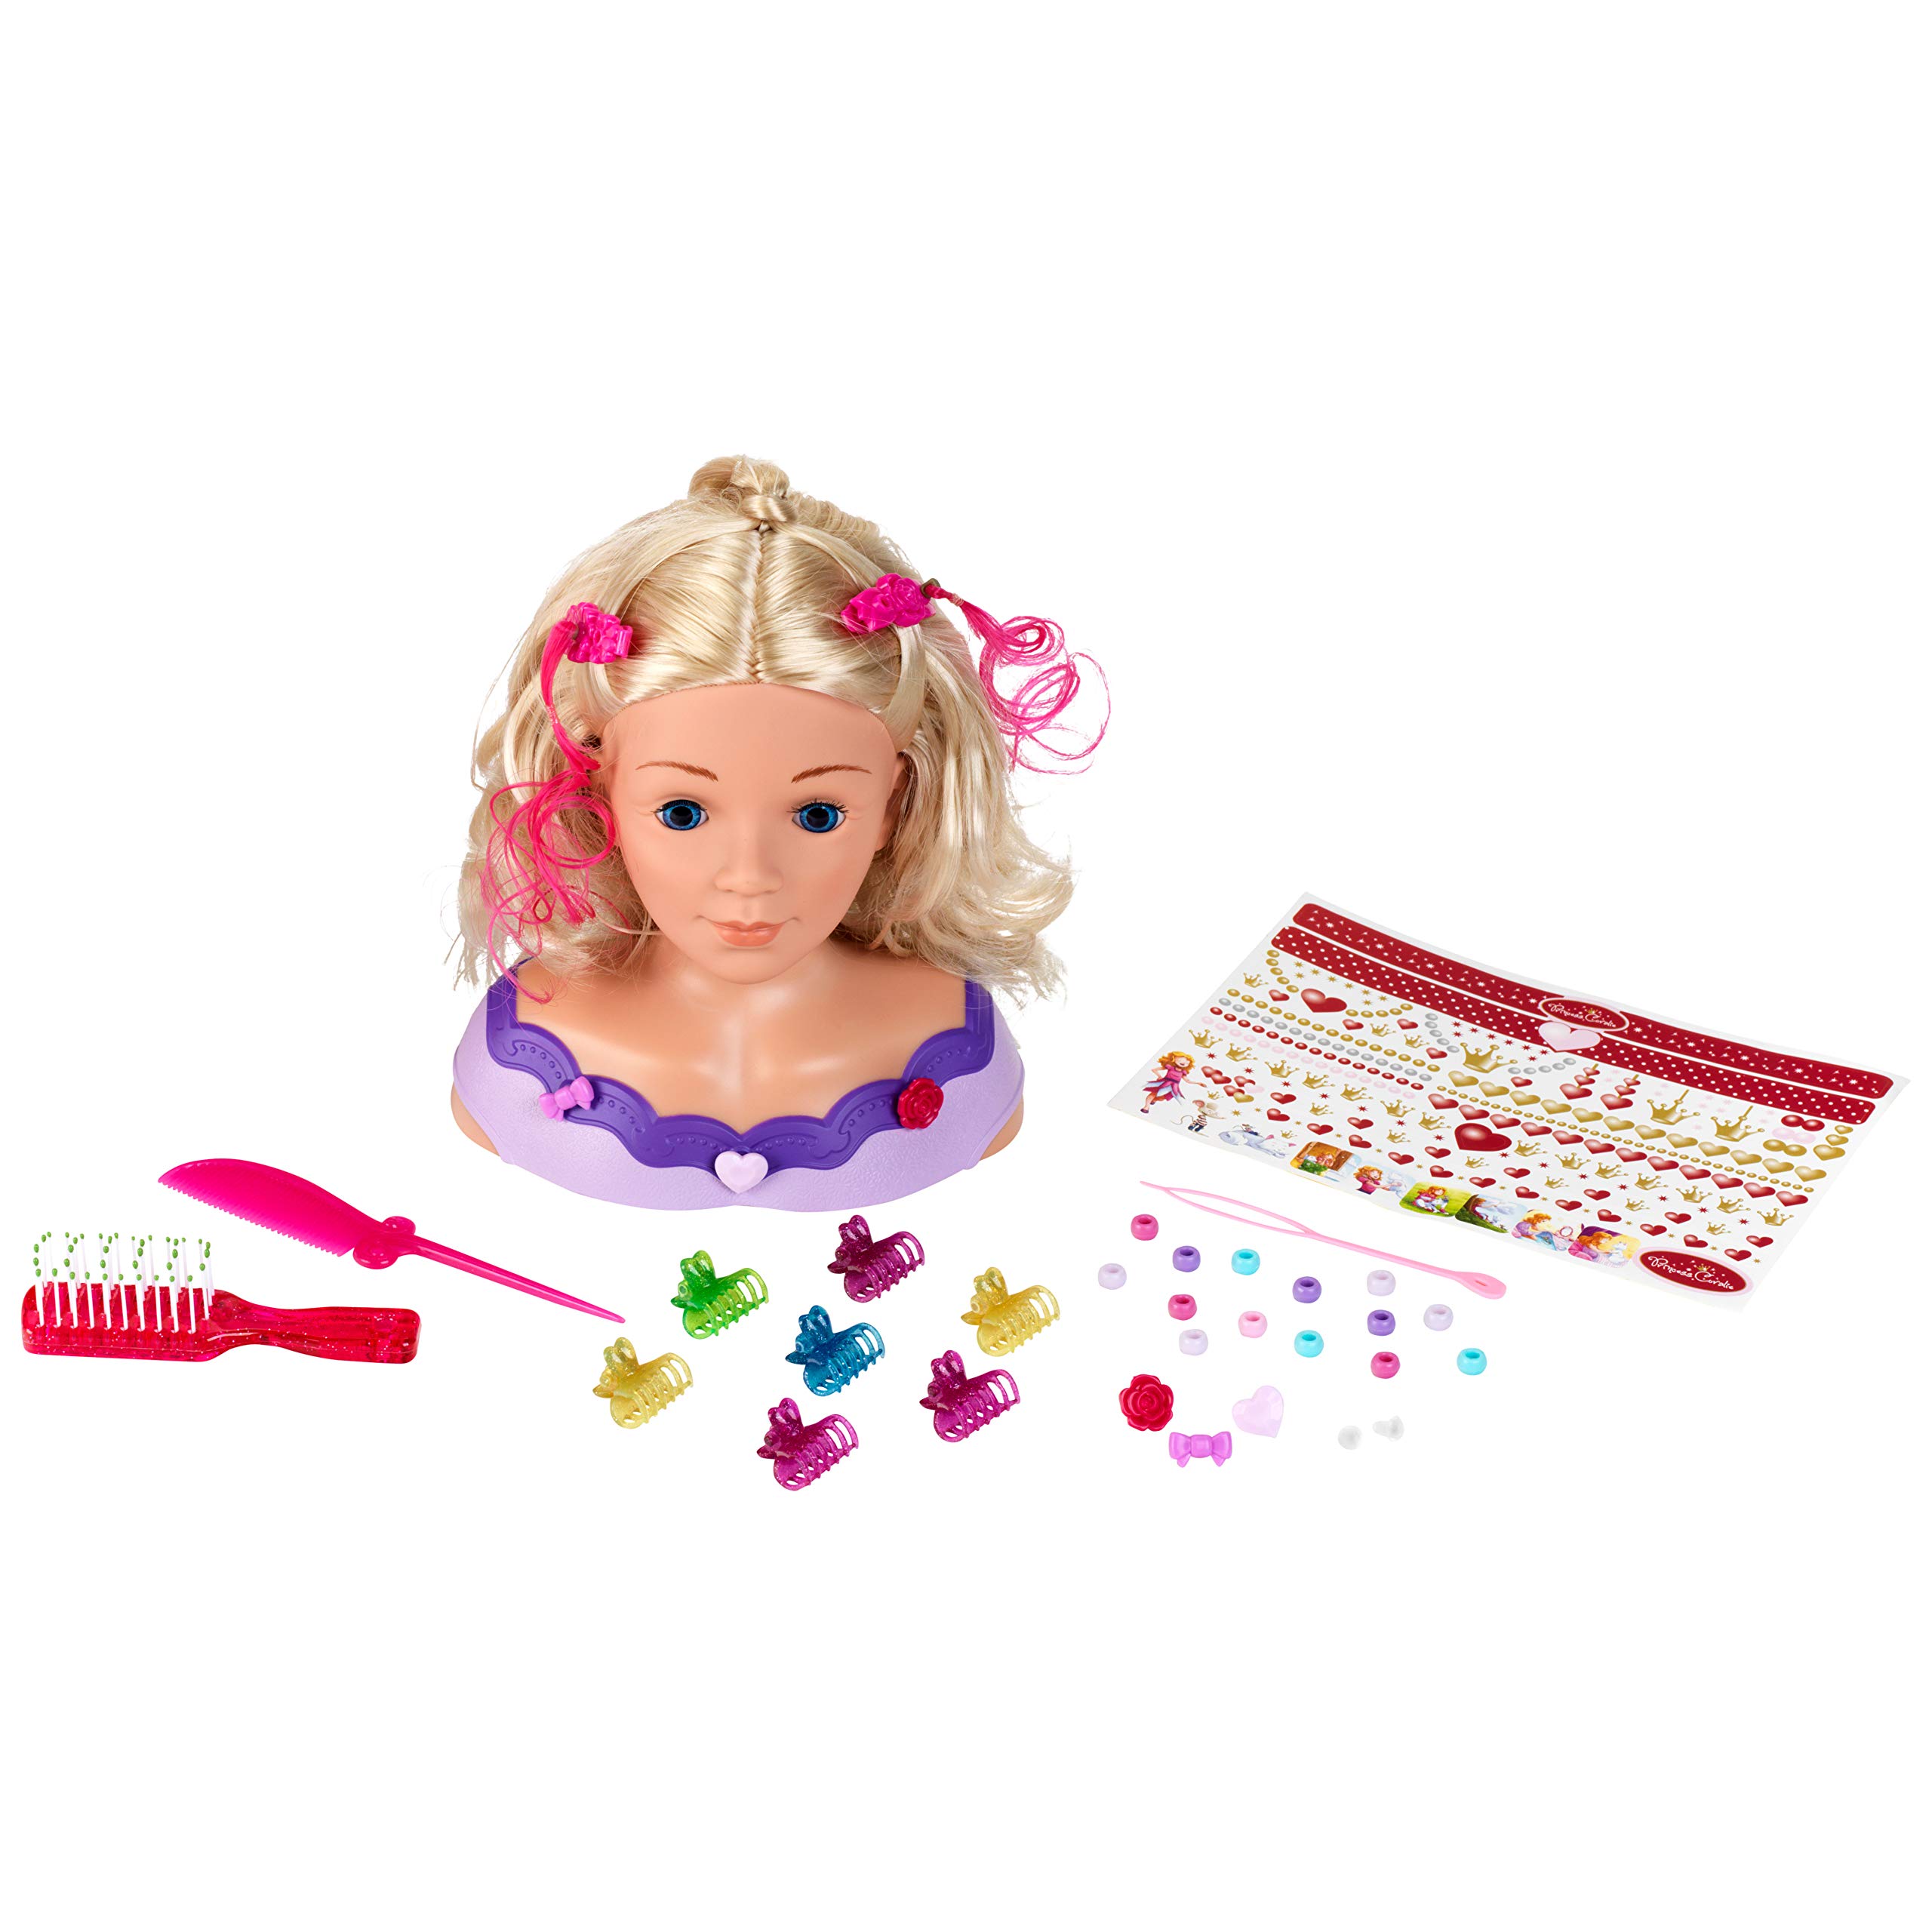 Klein Theo 5387 Princess Coralie Frisierkopf „Little Emma“ | Mit Bürste, Kamm, trendigem Haarschmuck u.v.m. | Spielzeug für Kinder ab 3 Jahren